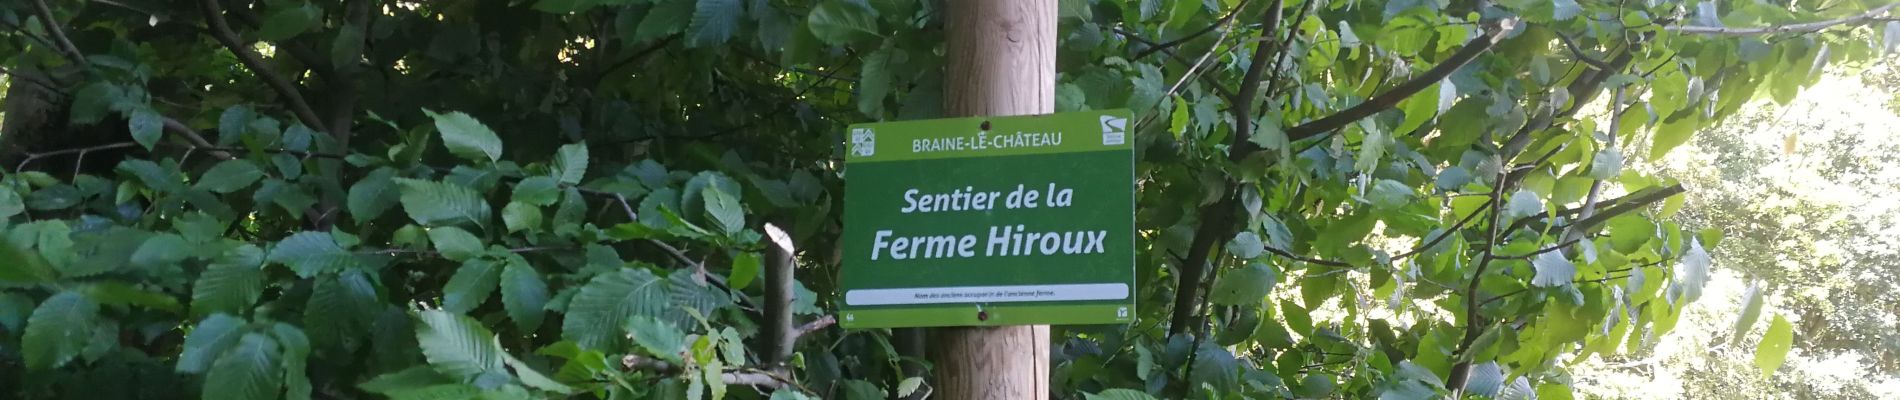 POI Ittre - Sentier de la ferme Hiroux (affichage Braine-Le-Château) - Photo